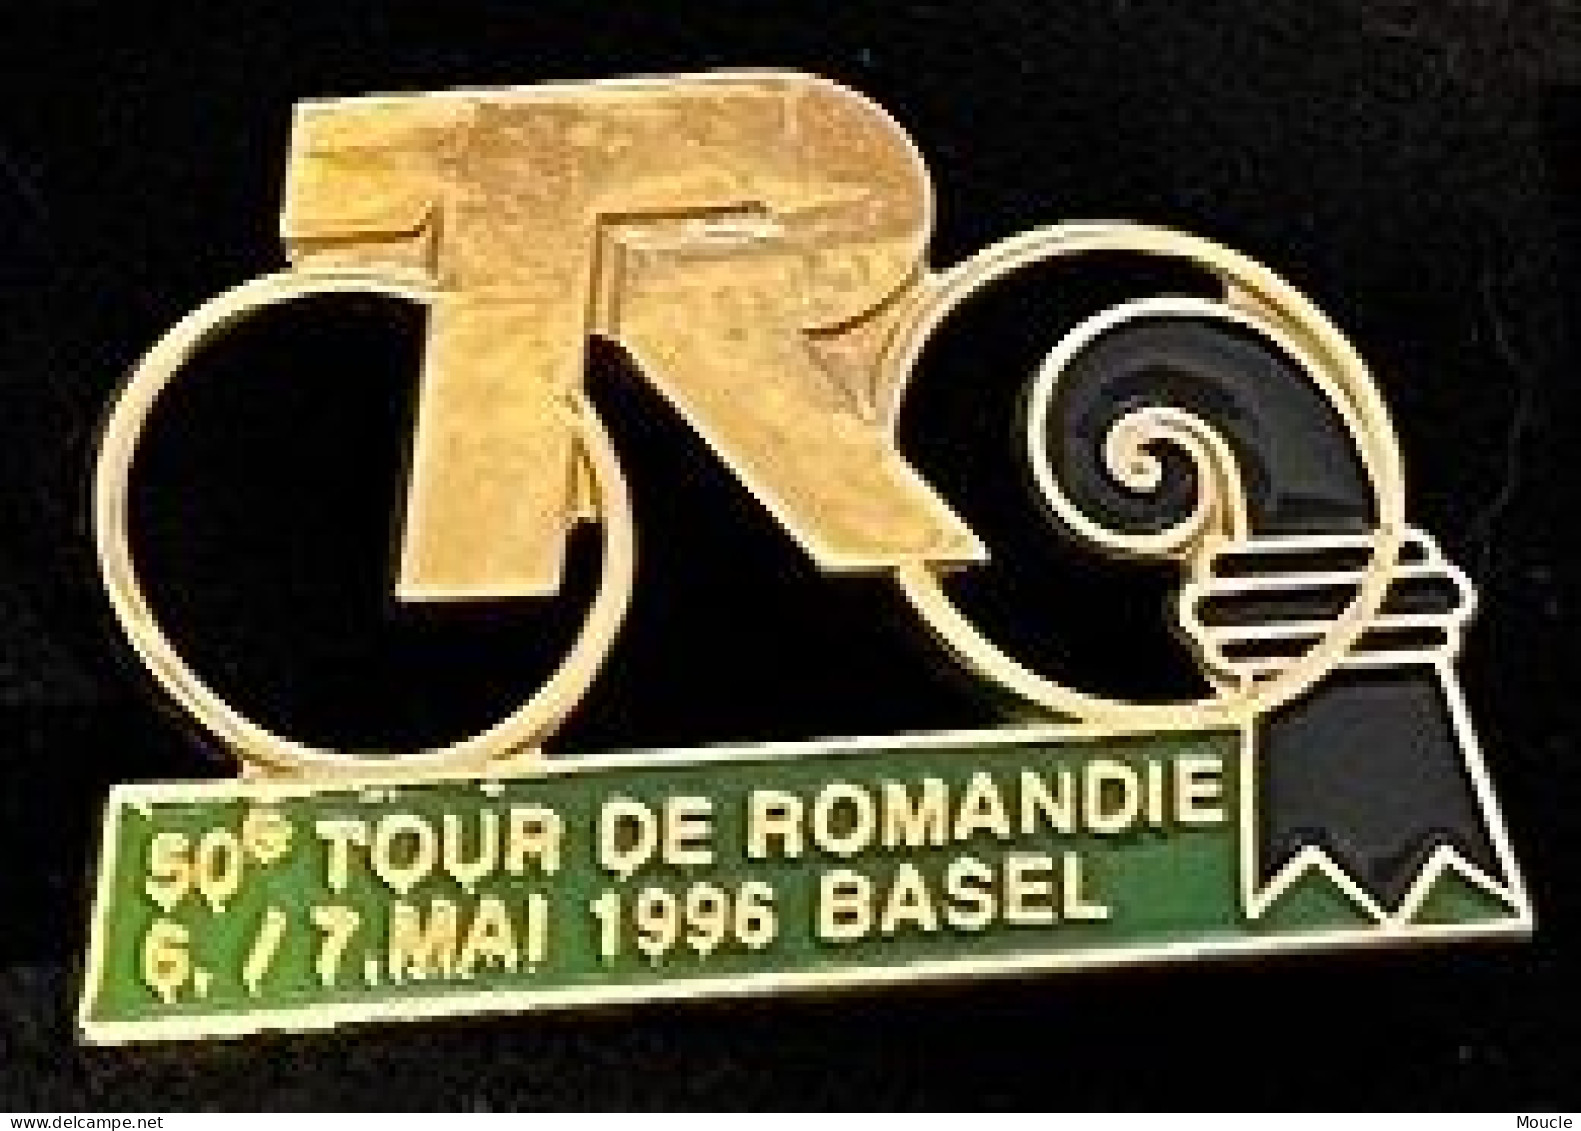 CYCLISME - VELO - BIKE - CYCLISTE - CYCLES - 50ème TOUR DE ROMANDIE 6-7 MAI 1996 - BALE - BASEL - SUISSE -SCHWEIZ-(33) - Radsport